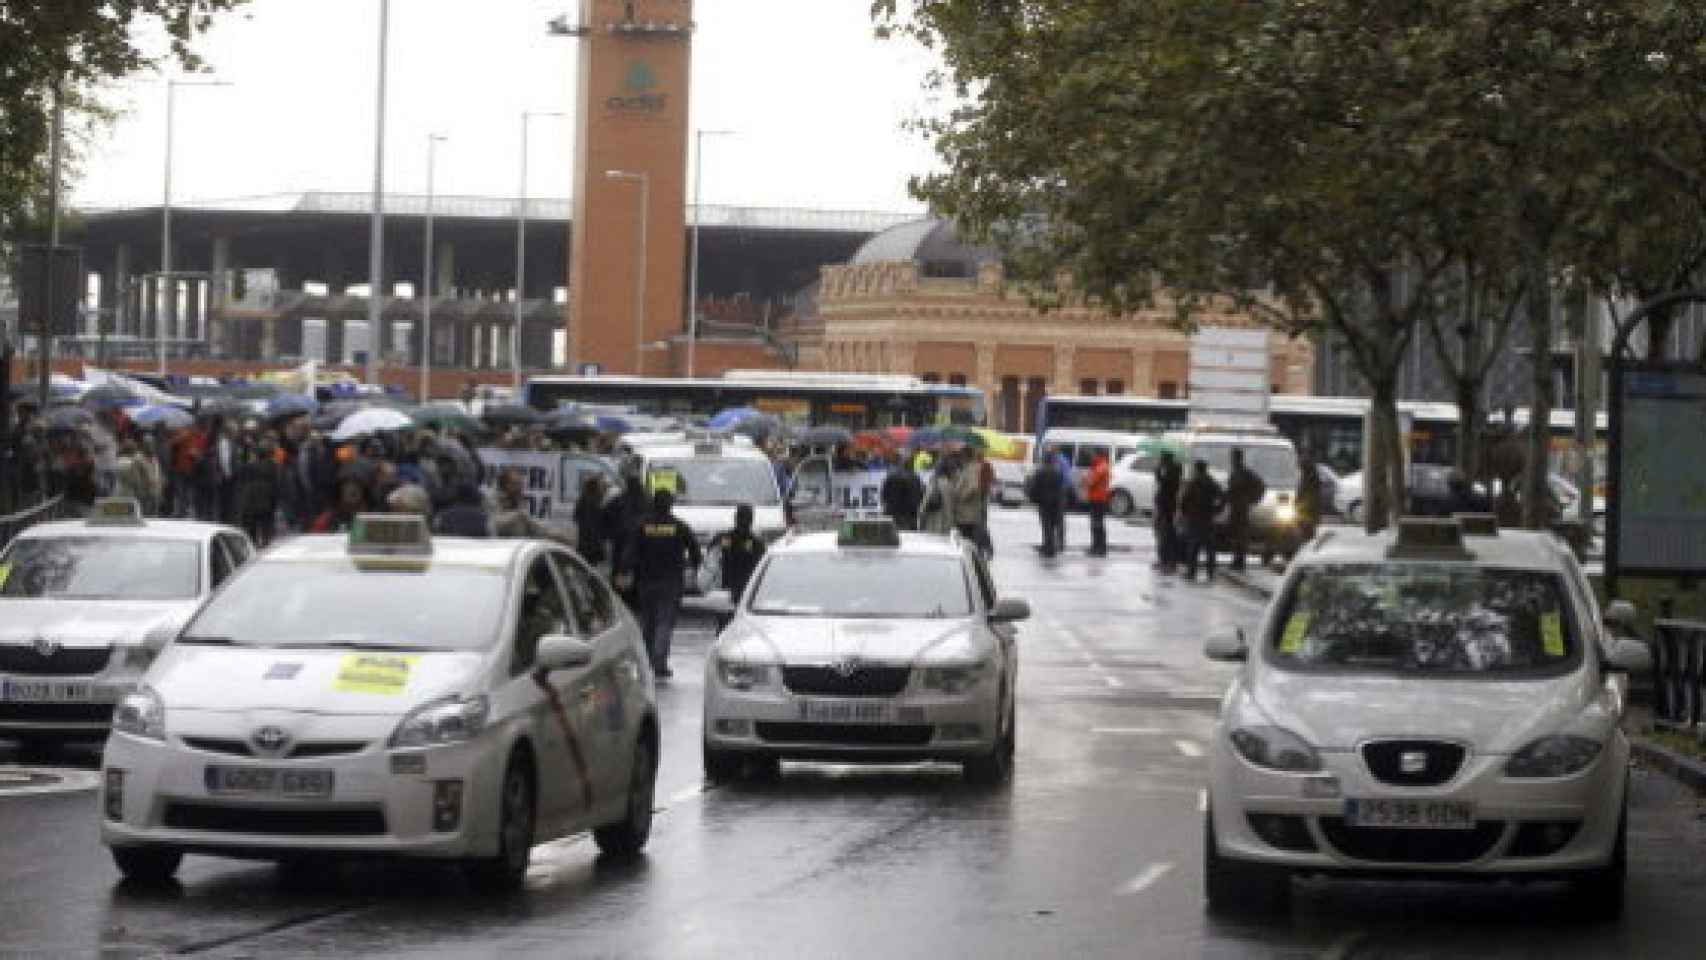 Foto de archivo de taxis en Atocha.